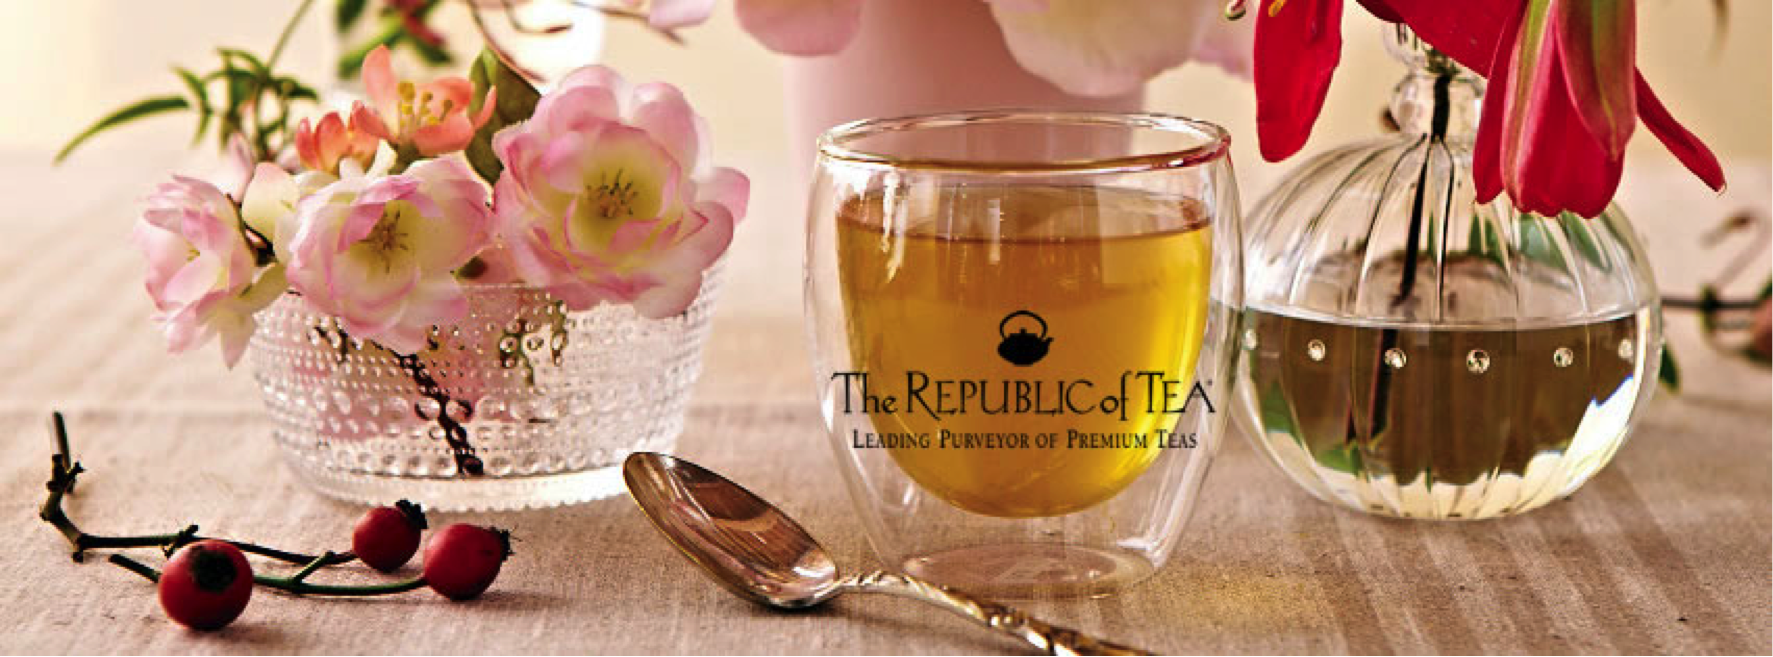 republic-of-tea